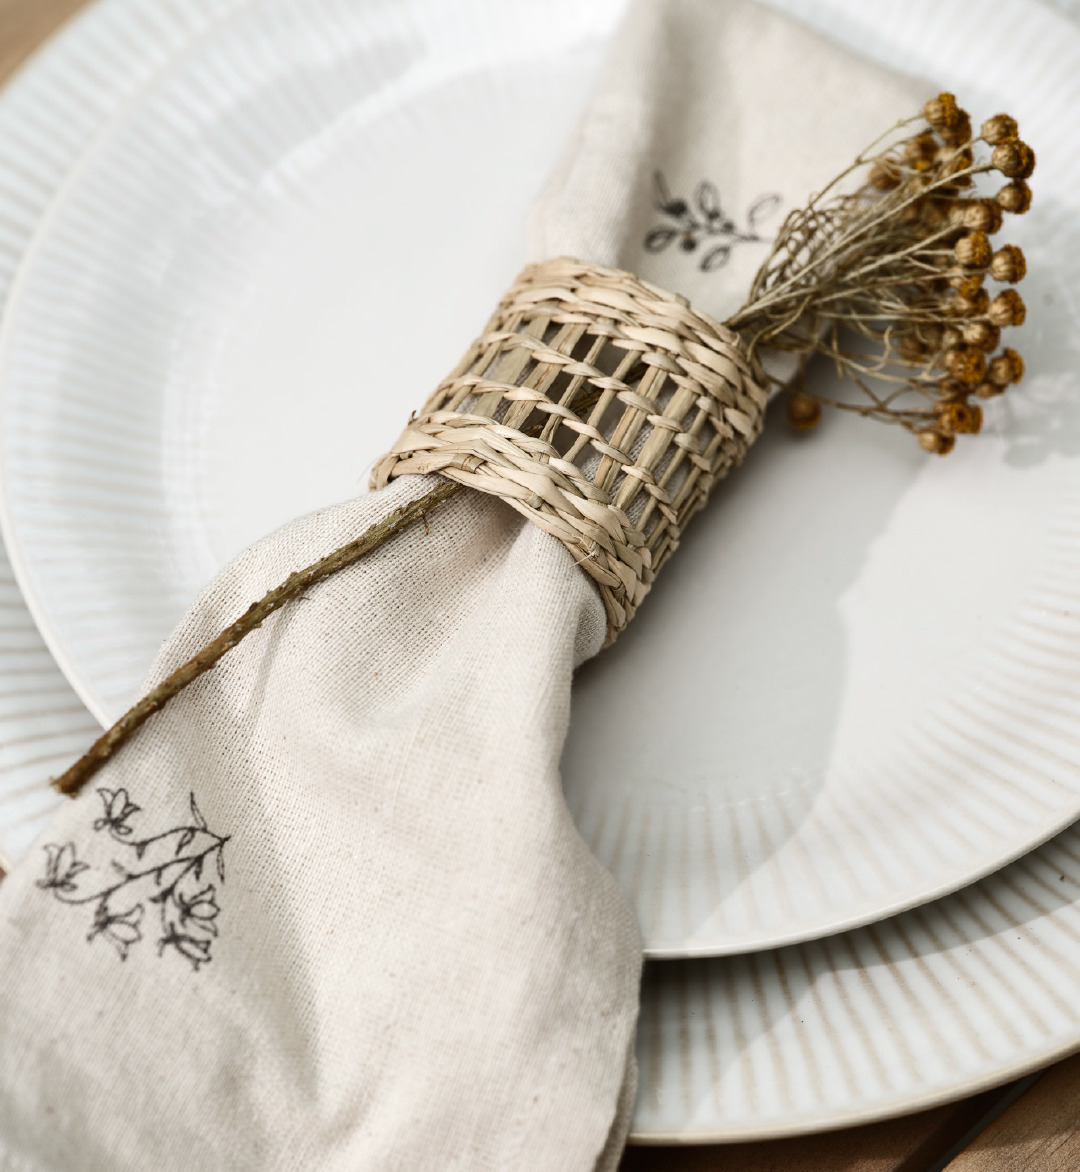 Assiette, sous-assiette et nappe beige avec ronds de serviette